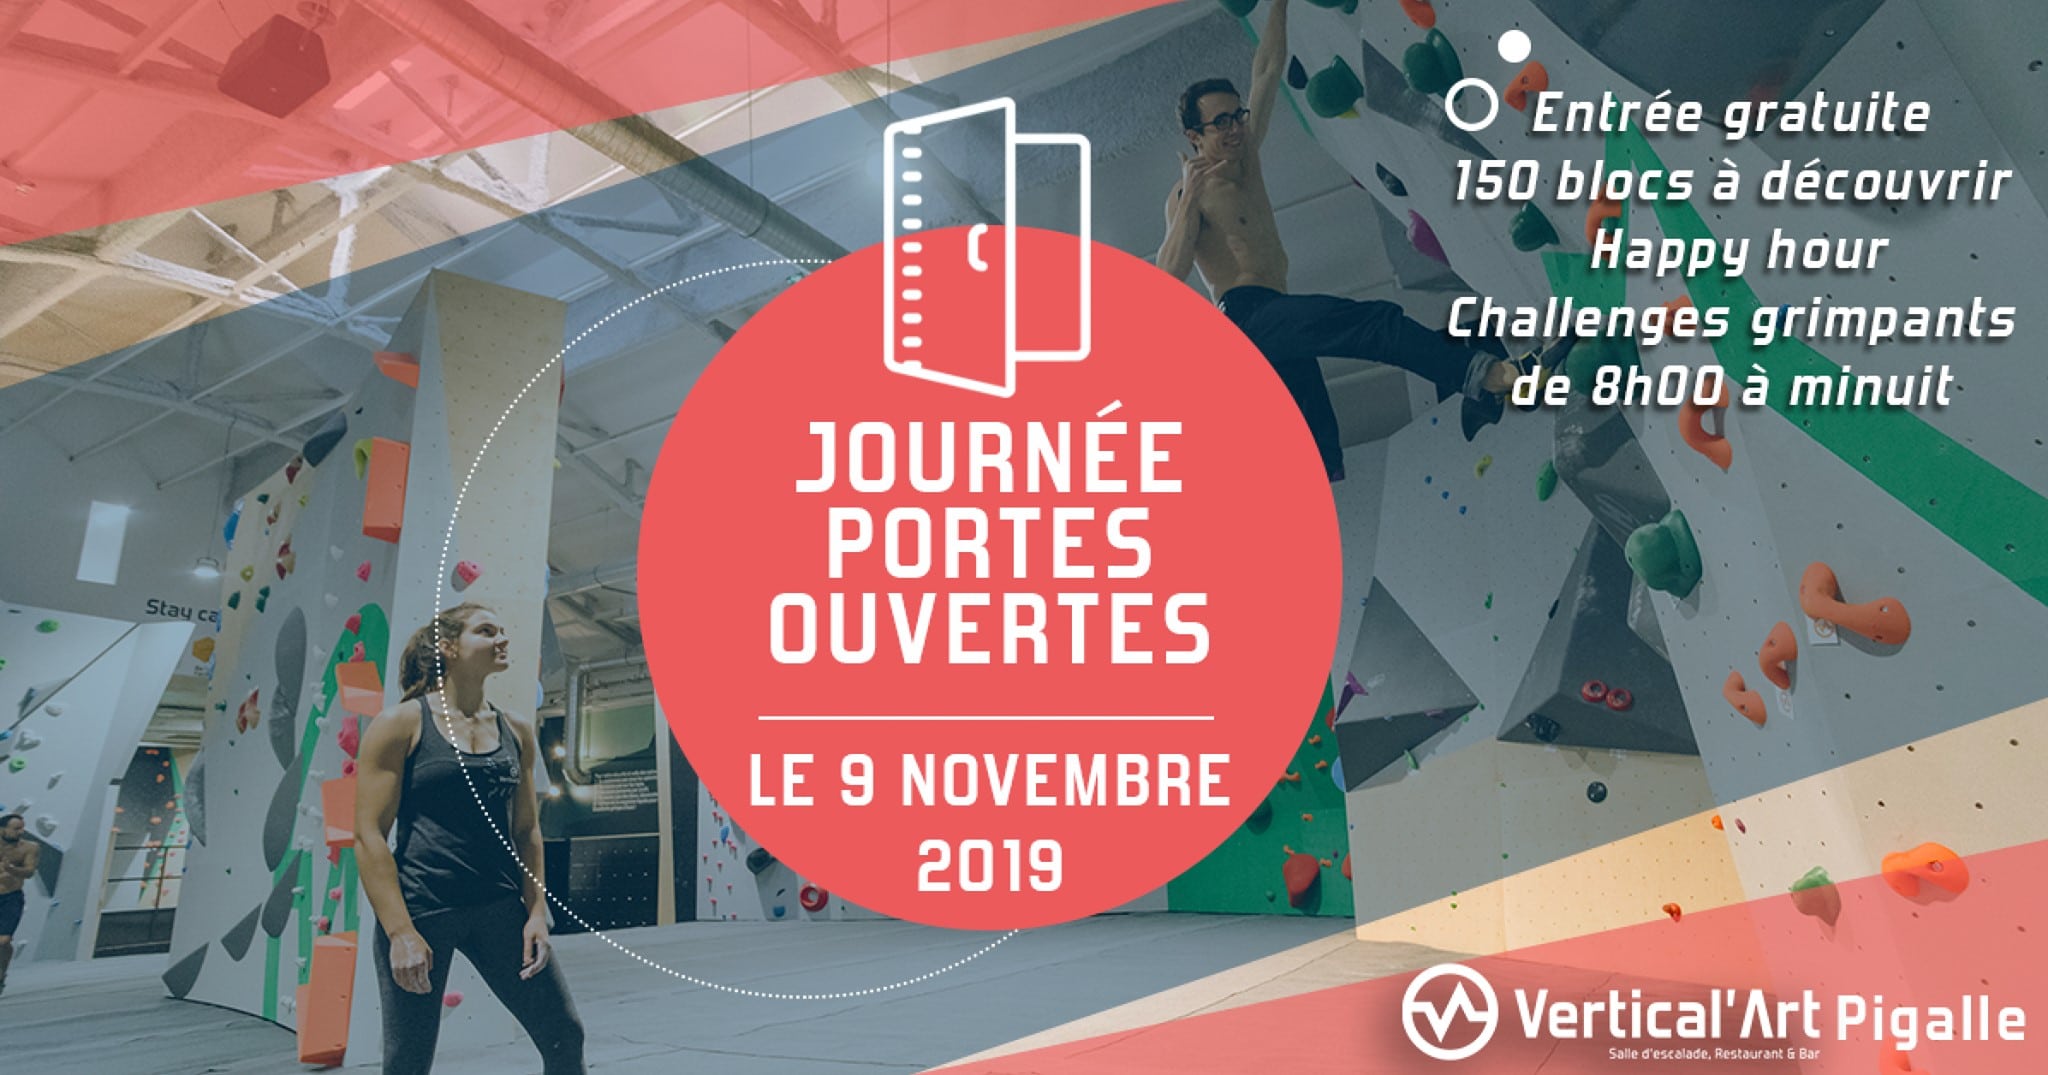 journée portes ouvertes - à Vertical'Art Pigalle - paris - salle d'escalade de bloc - restaurant & bar - gratuits - le 9 novembre 2019 -